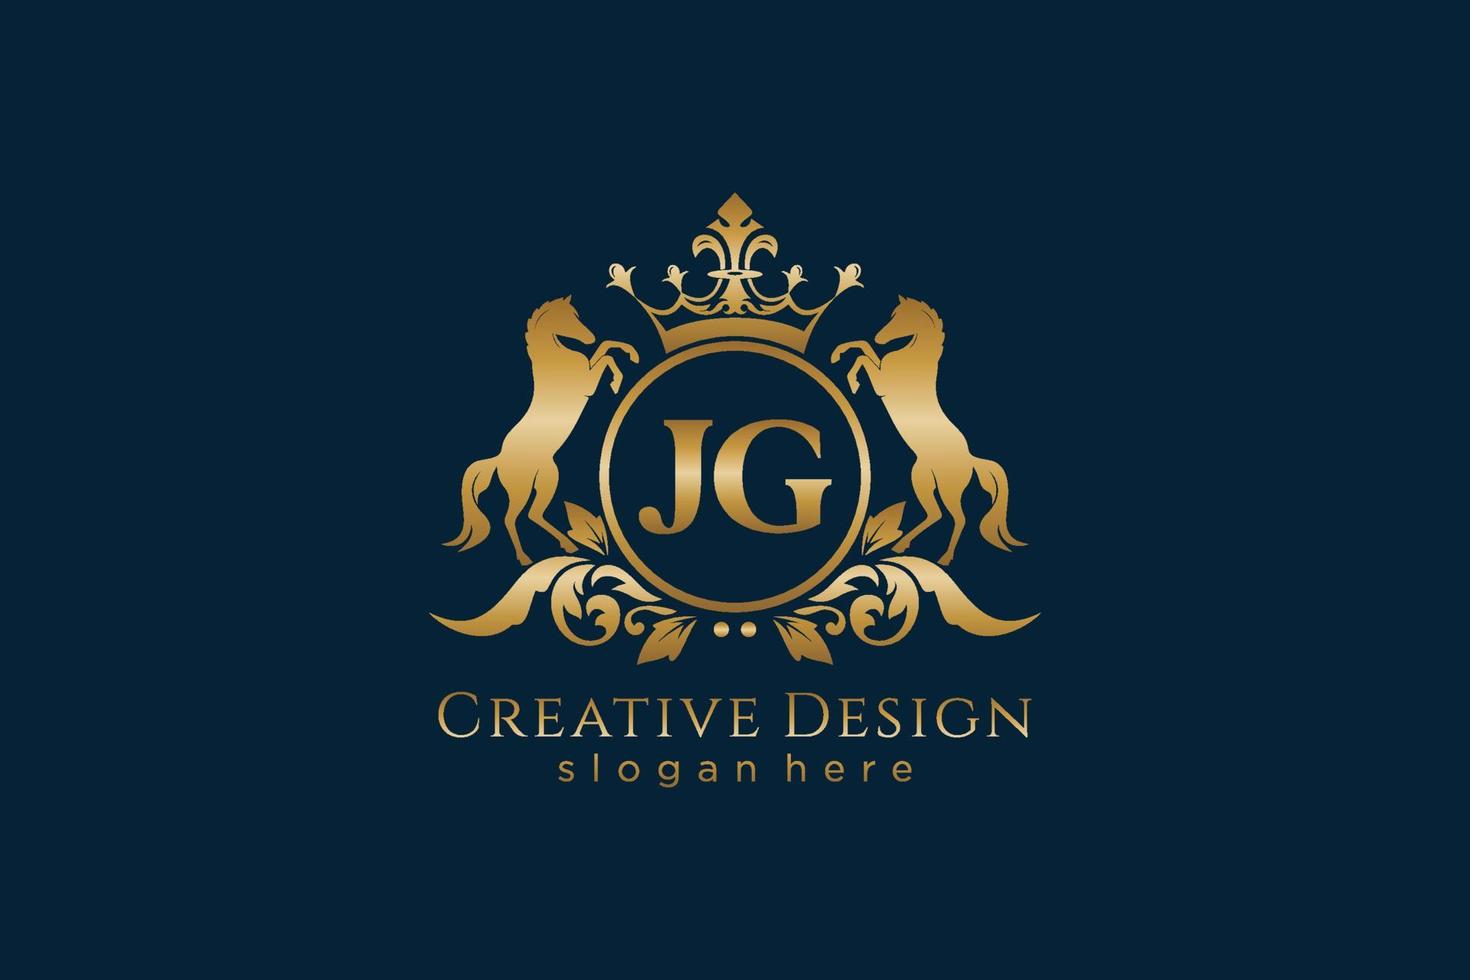 crista dourada retro jg inicial com círculo e dois cavalos, modelo de crachá com pergaminhos e coroa real - perfeito para projetos de marca luxuosos vetor